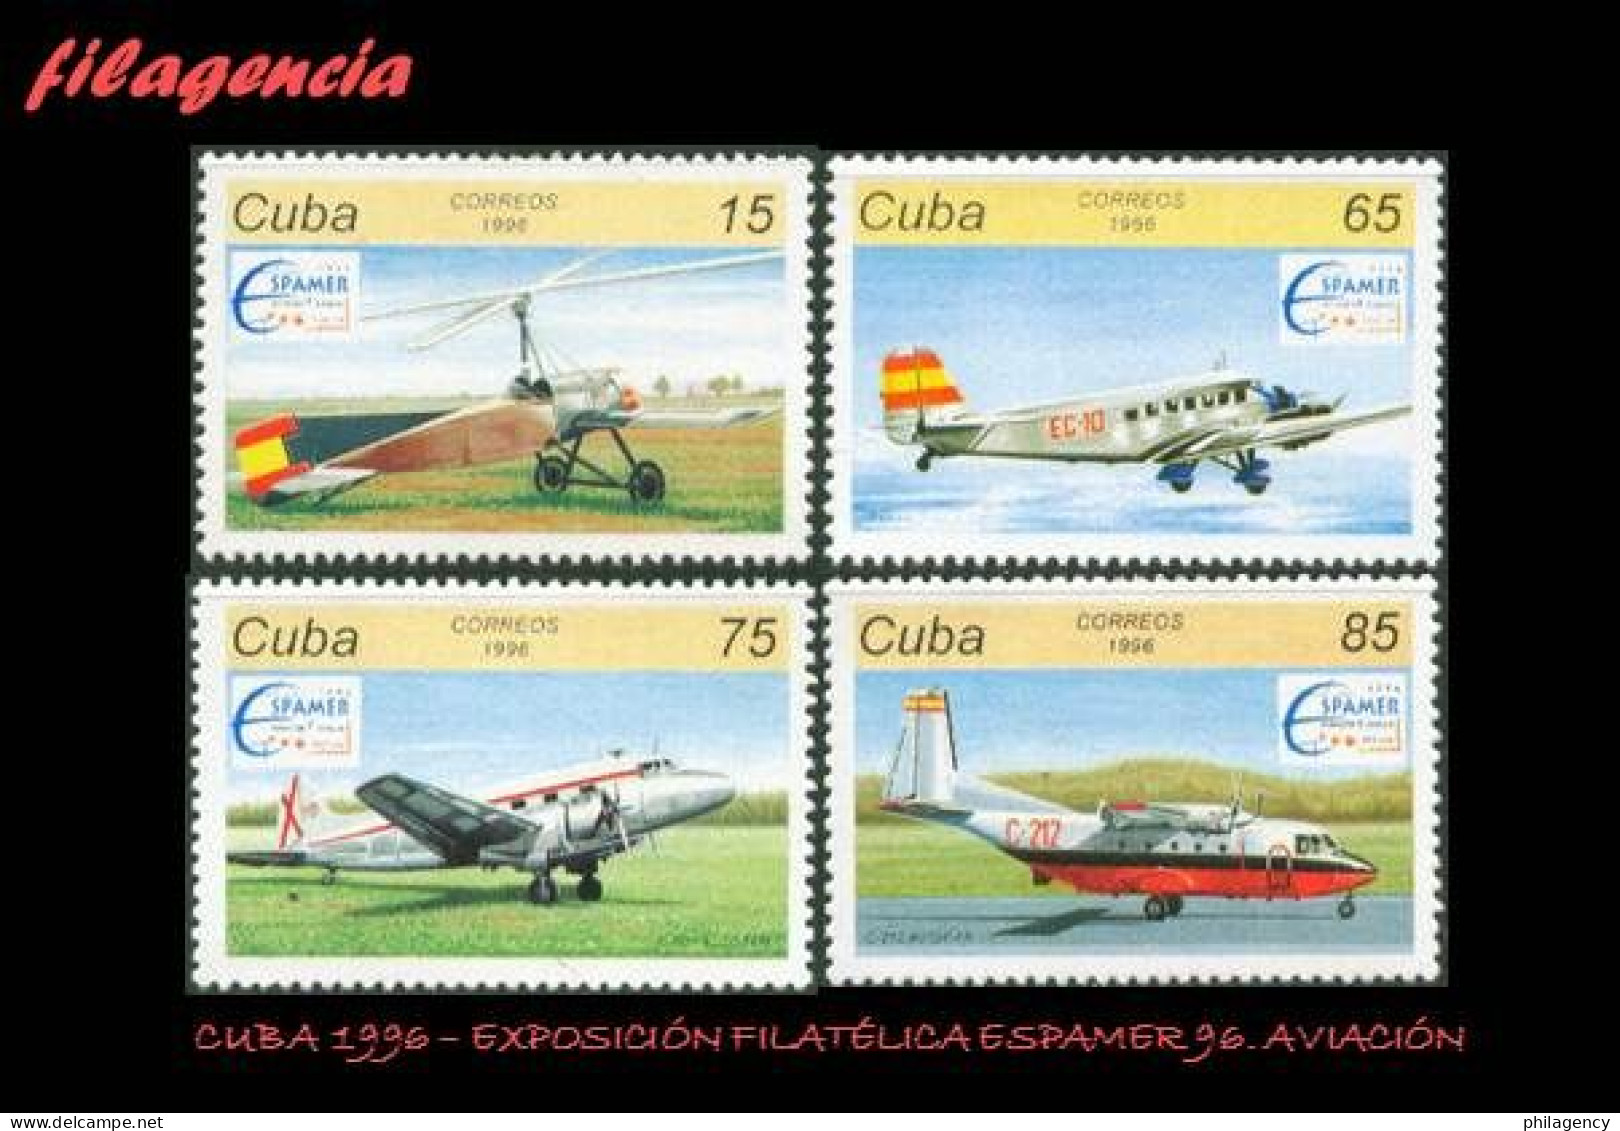 CUBA MINT. 1996-05 EXPOSICIÓN FILATÉLICA ESPAMER 96. AVIACIÓN - Unused Stamps